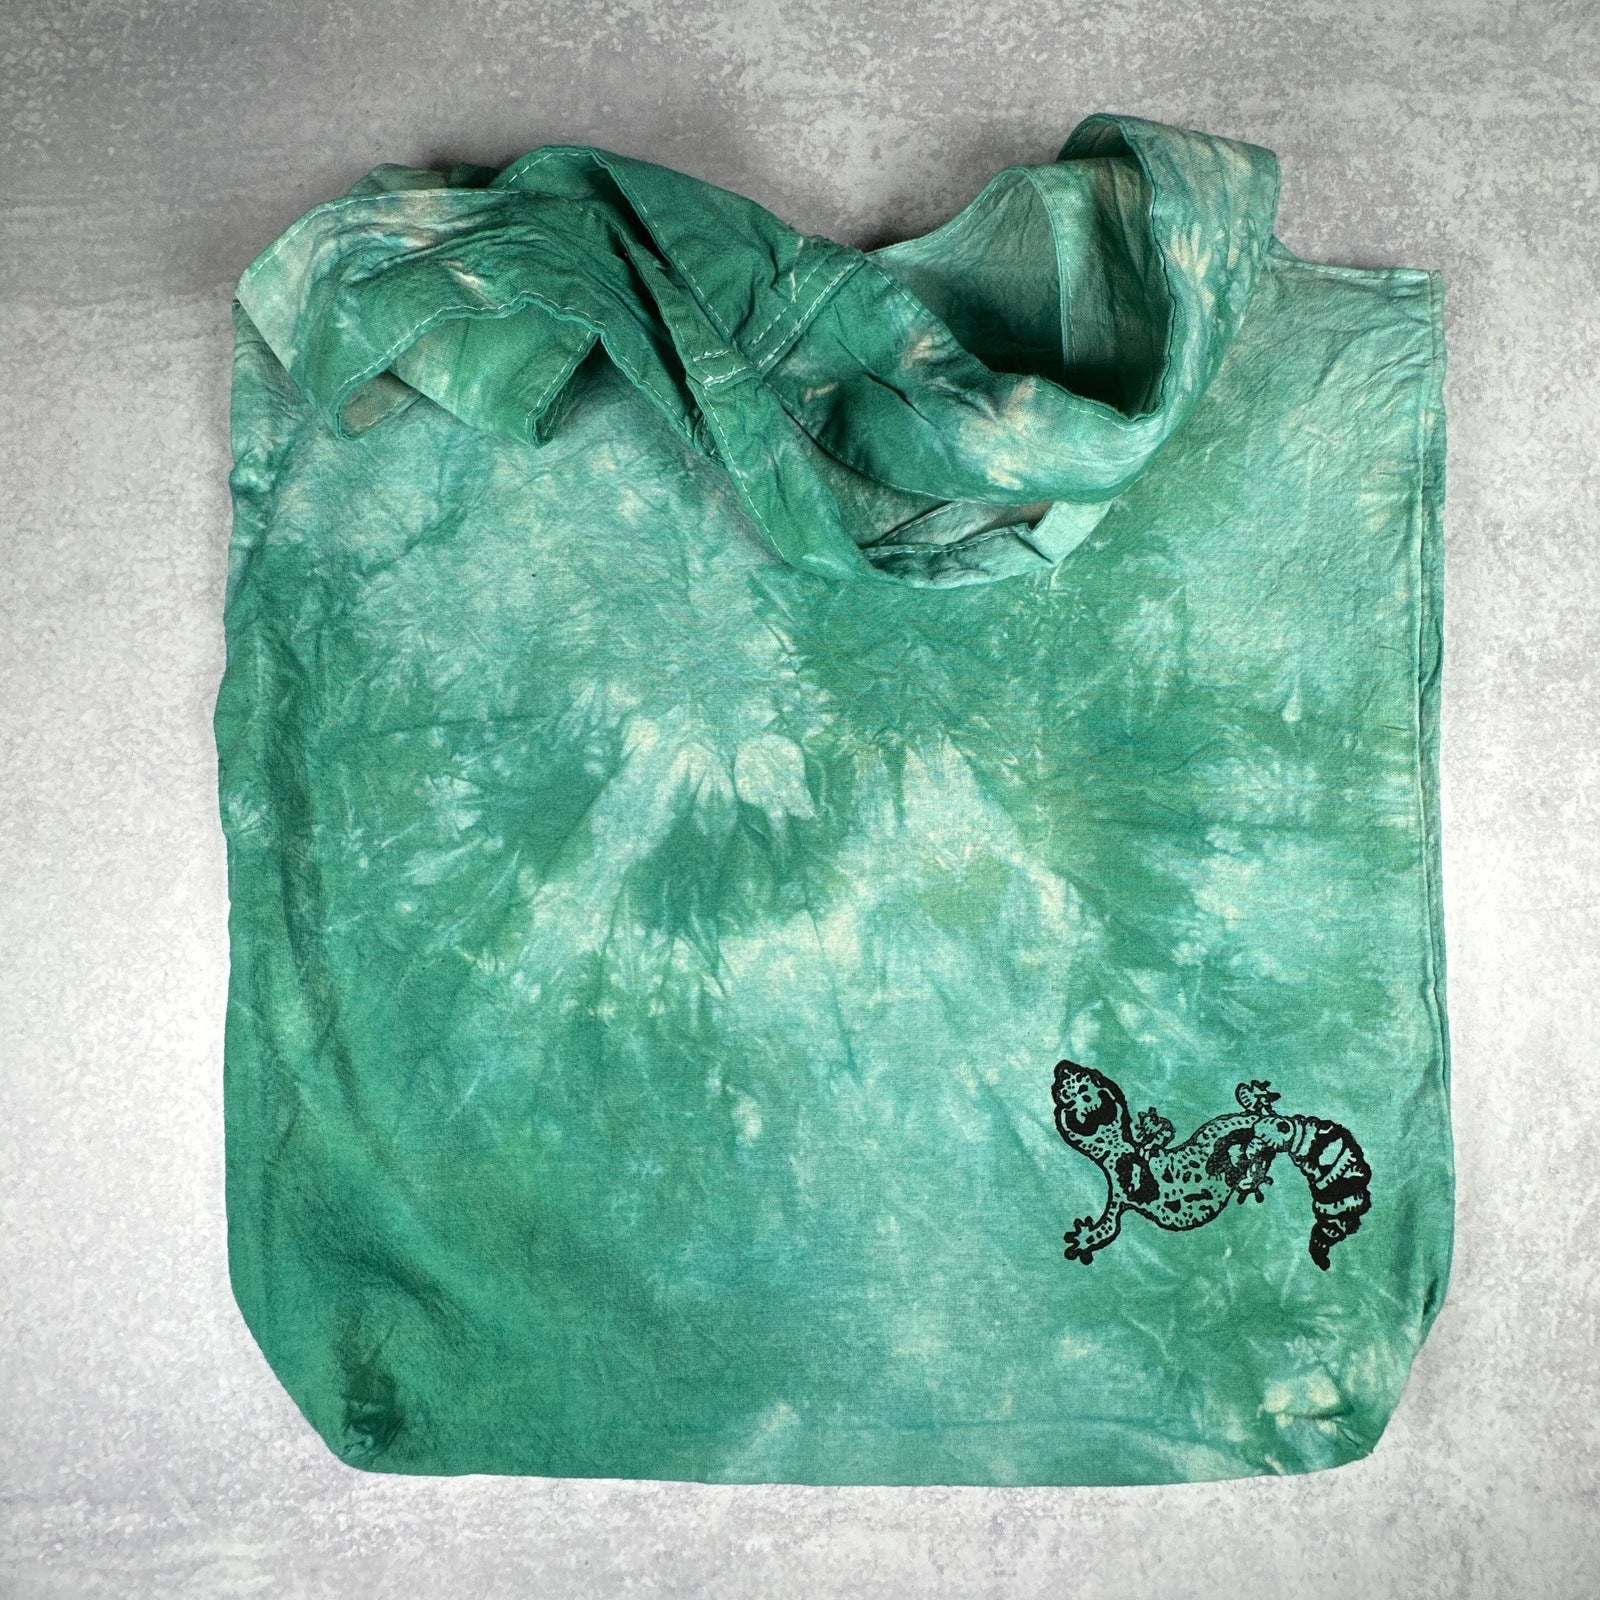 Teal Tie-dye Gecko Tote Bag